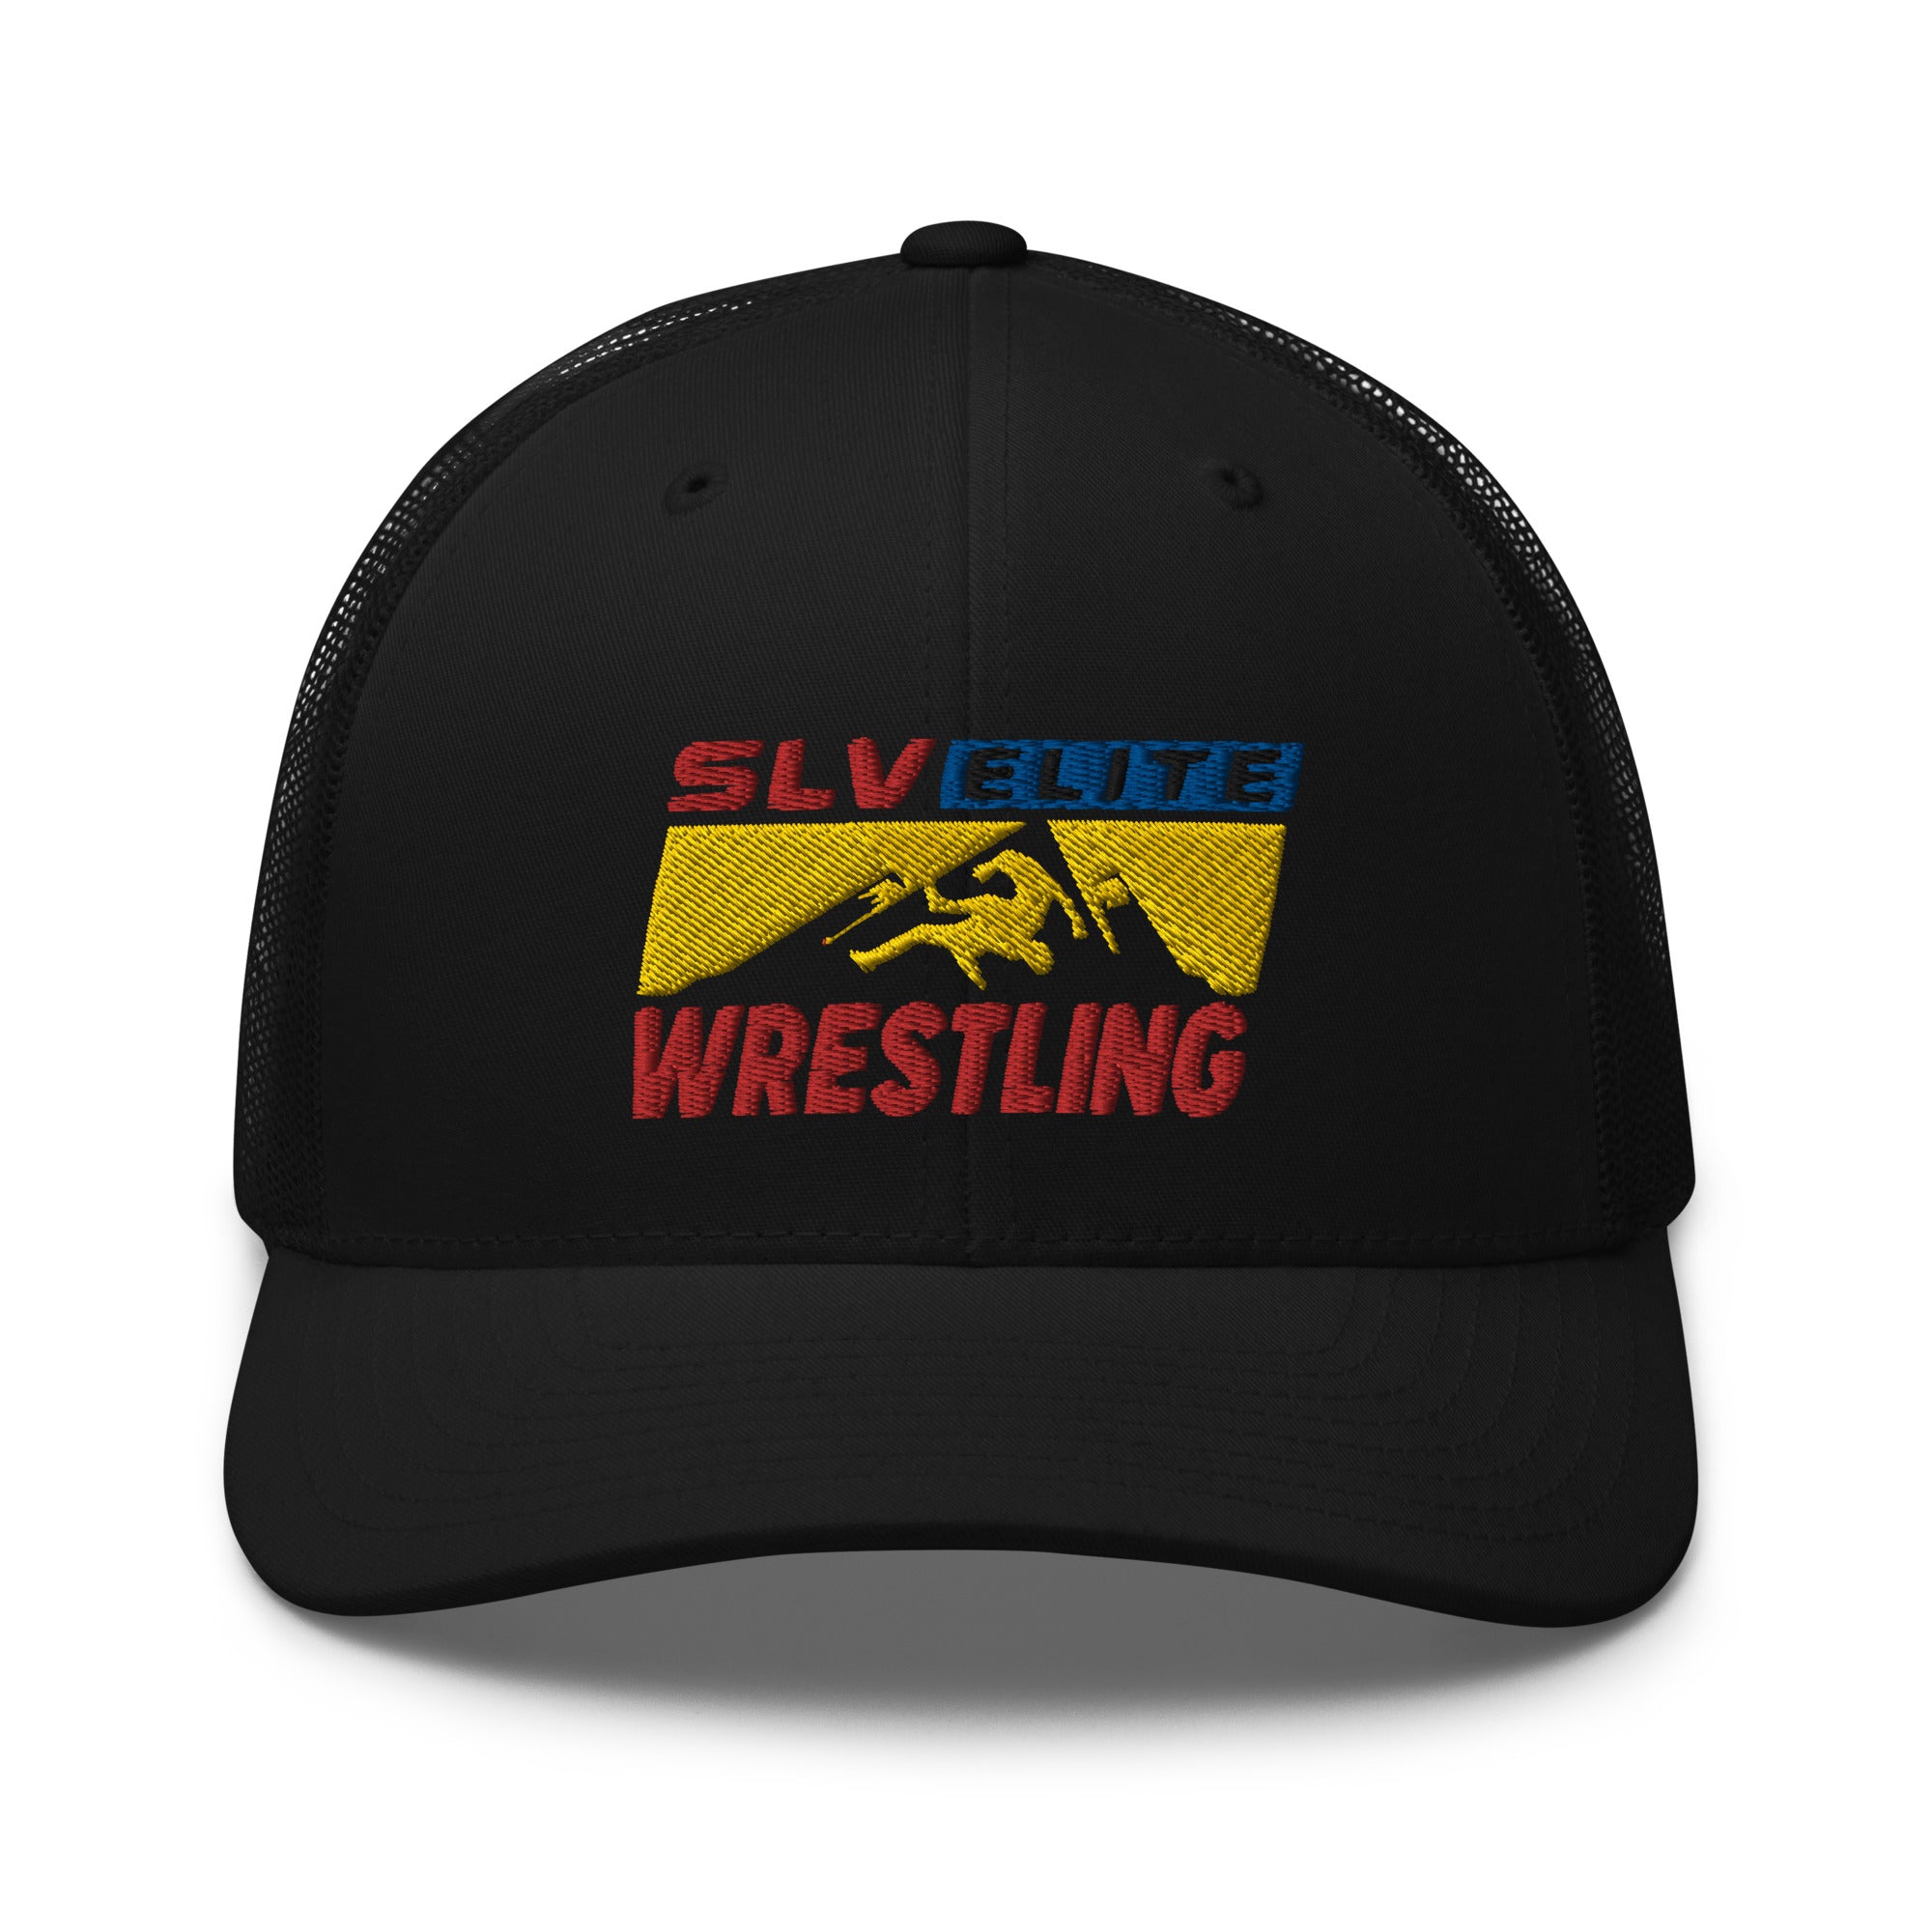 SLV Elite Wrestling Retro Trucker Hat